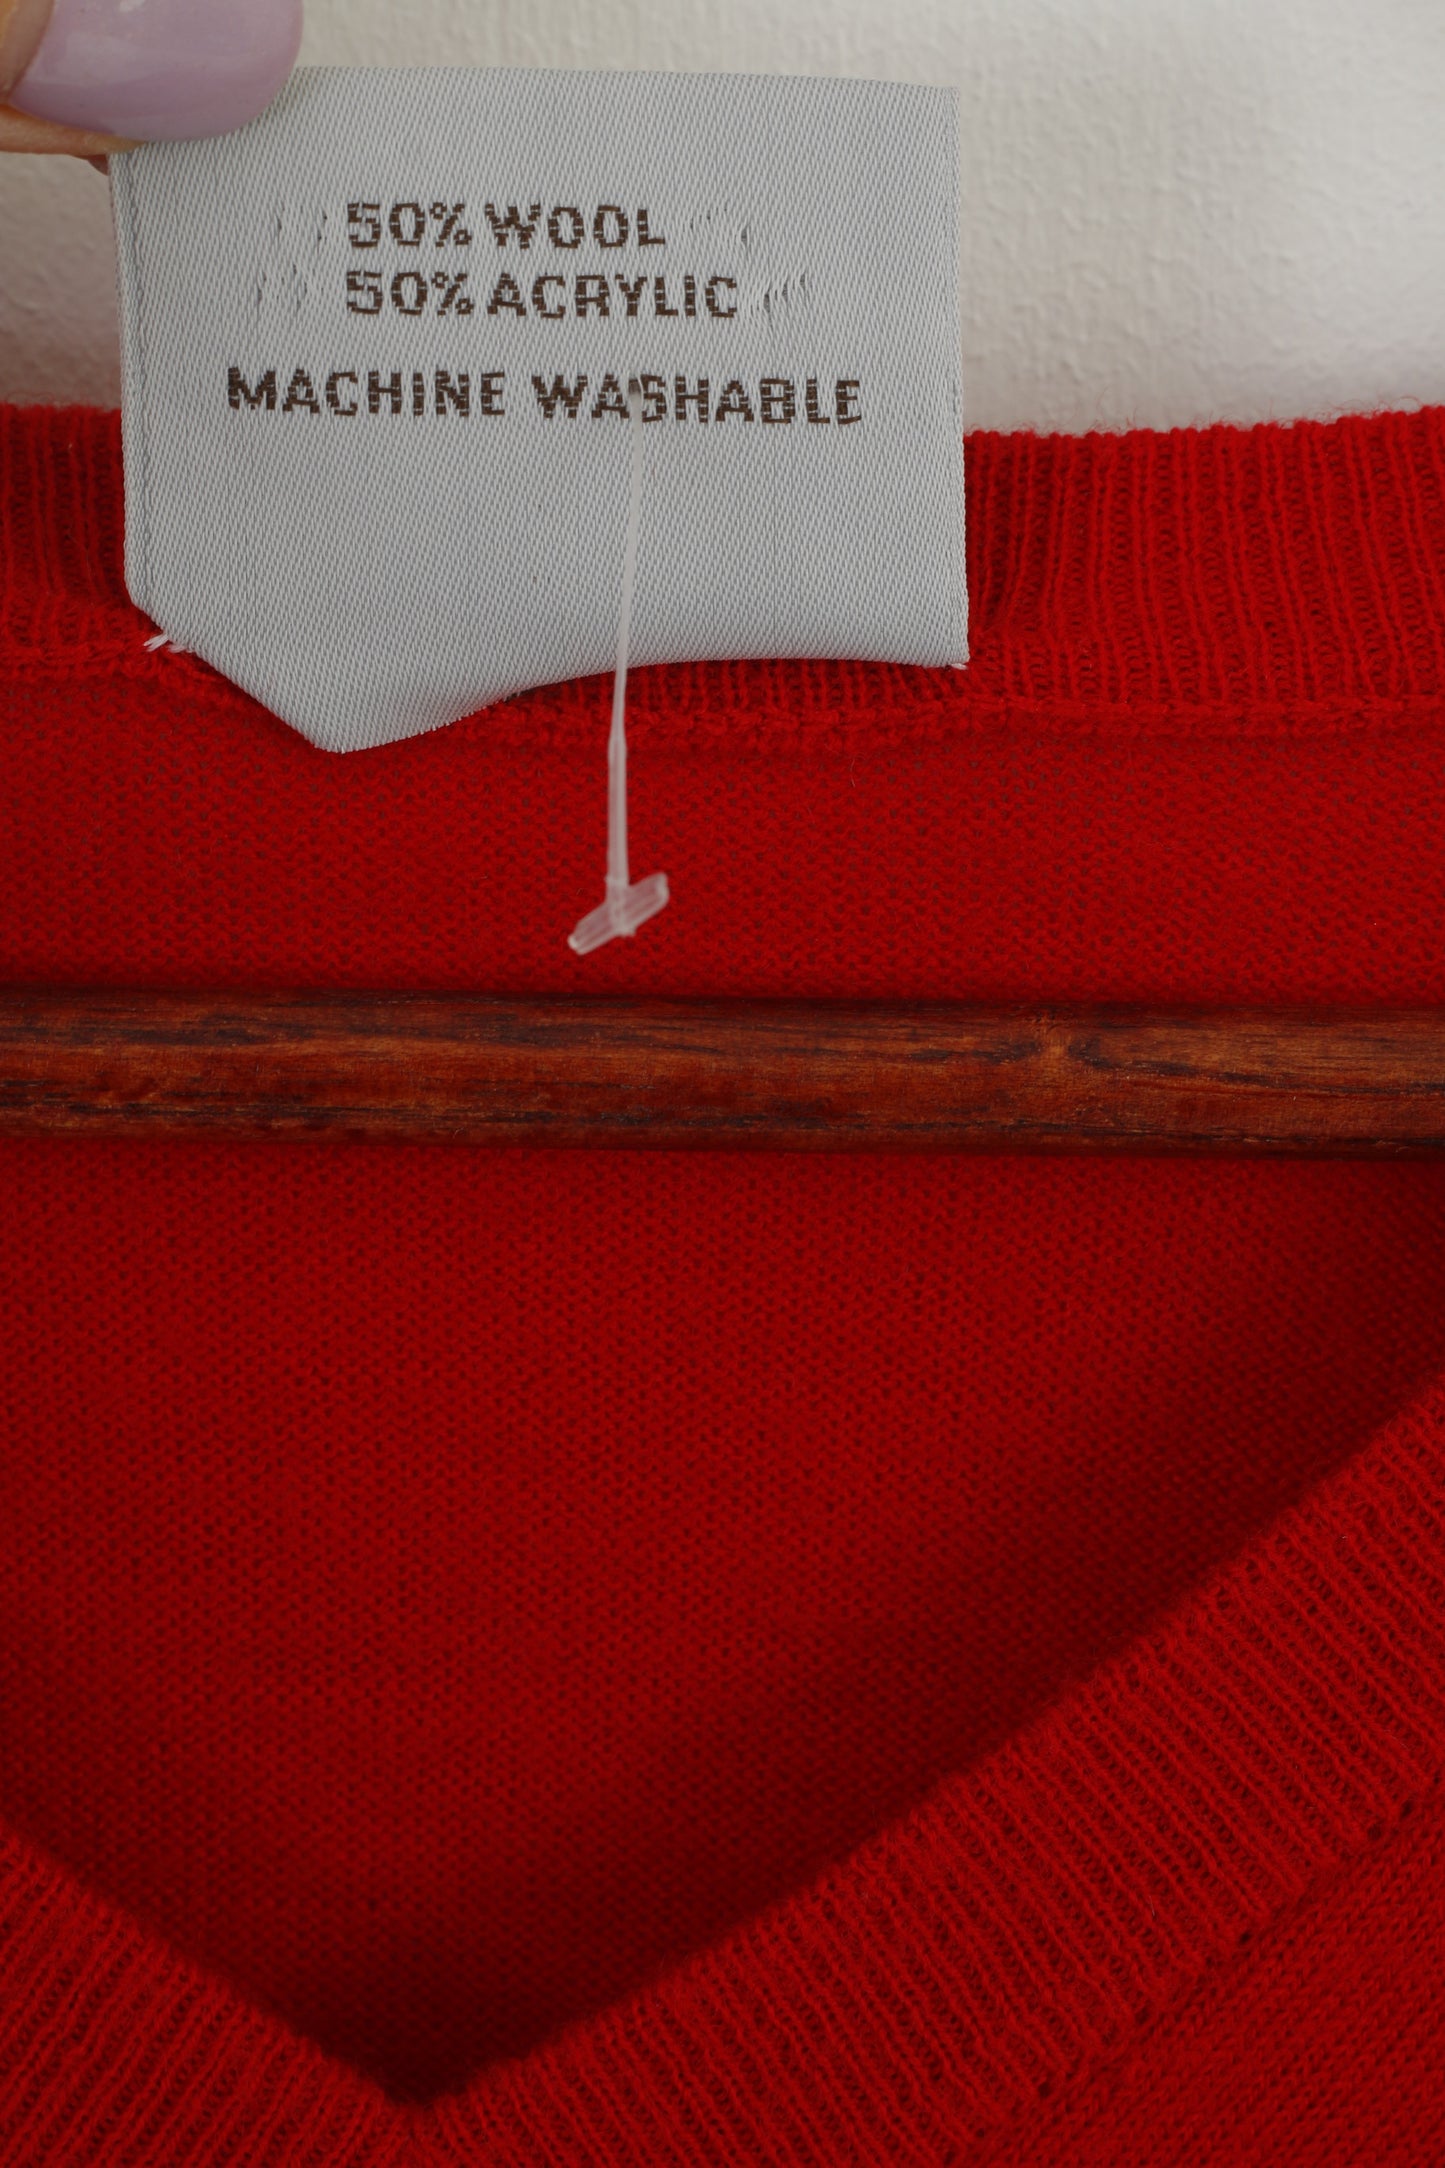 Jaeger Sportsman Men XL (M)  Jumper Red Wool Vintage V Neck Classic Sweater